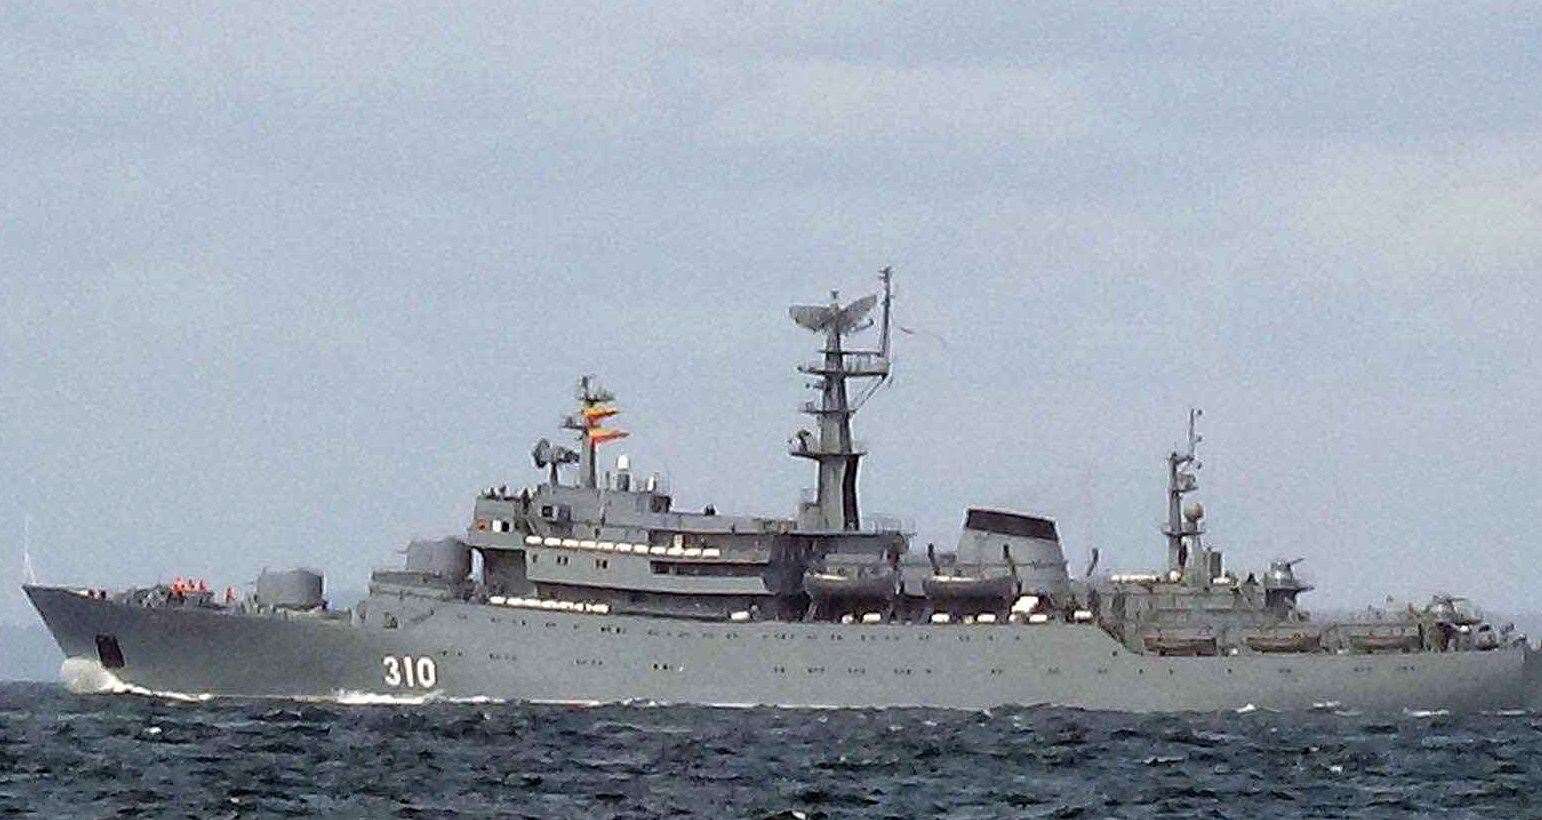 The Russian ship travelling near Dover. Picture: Matt Coker